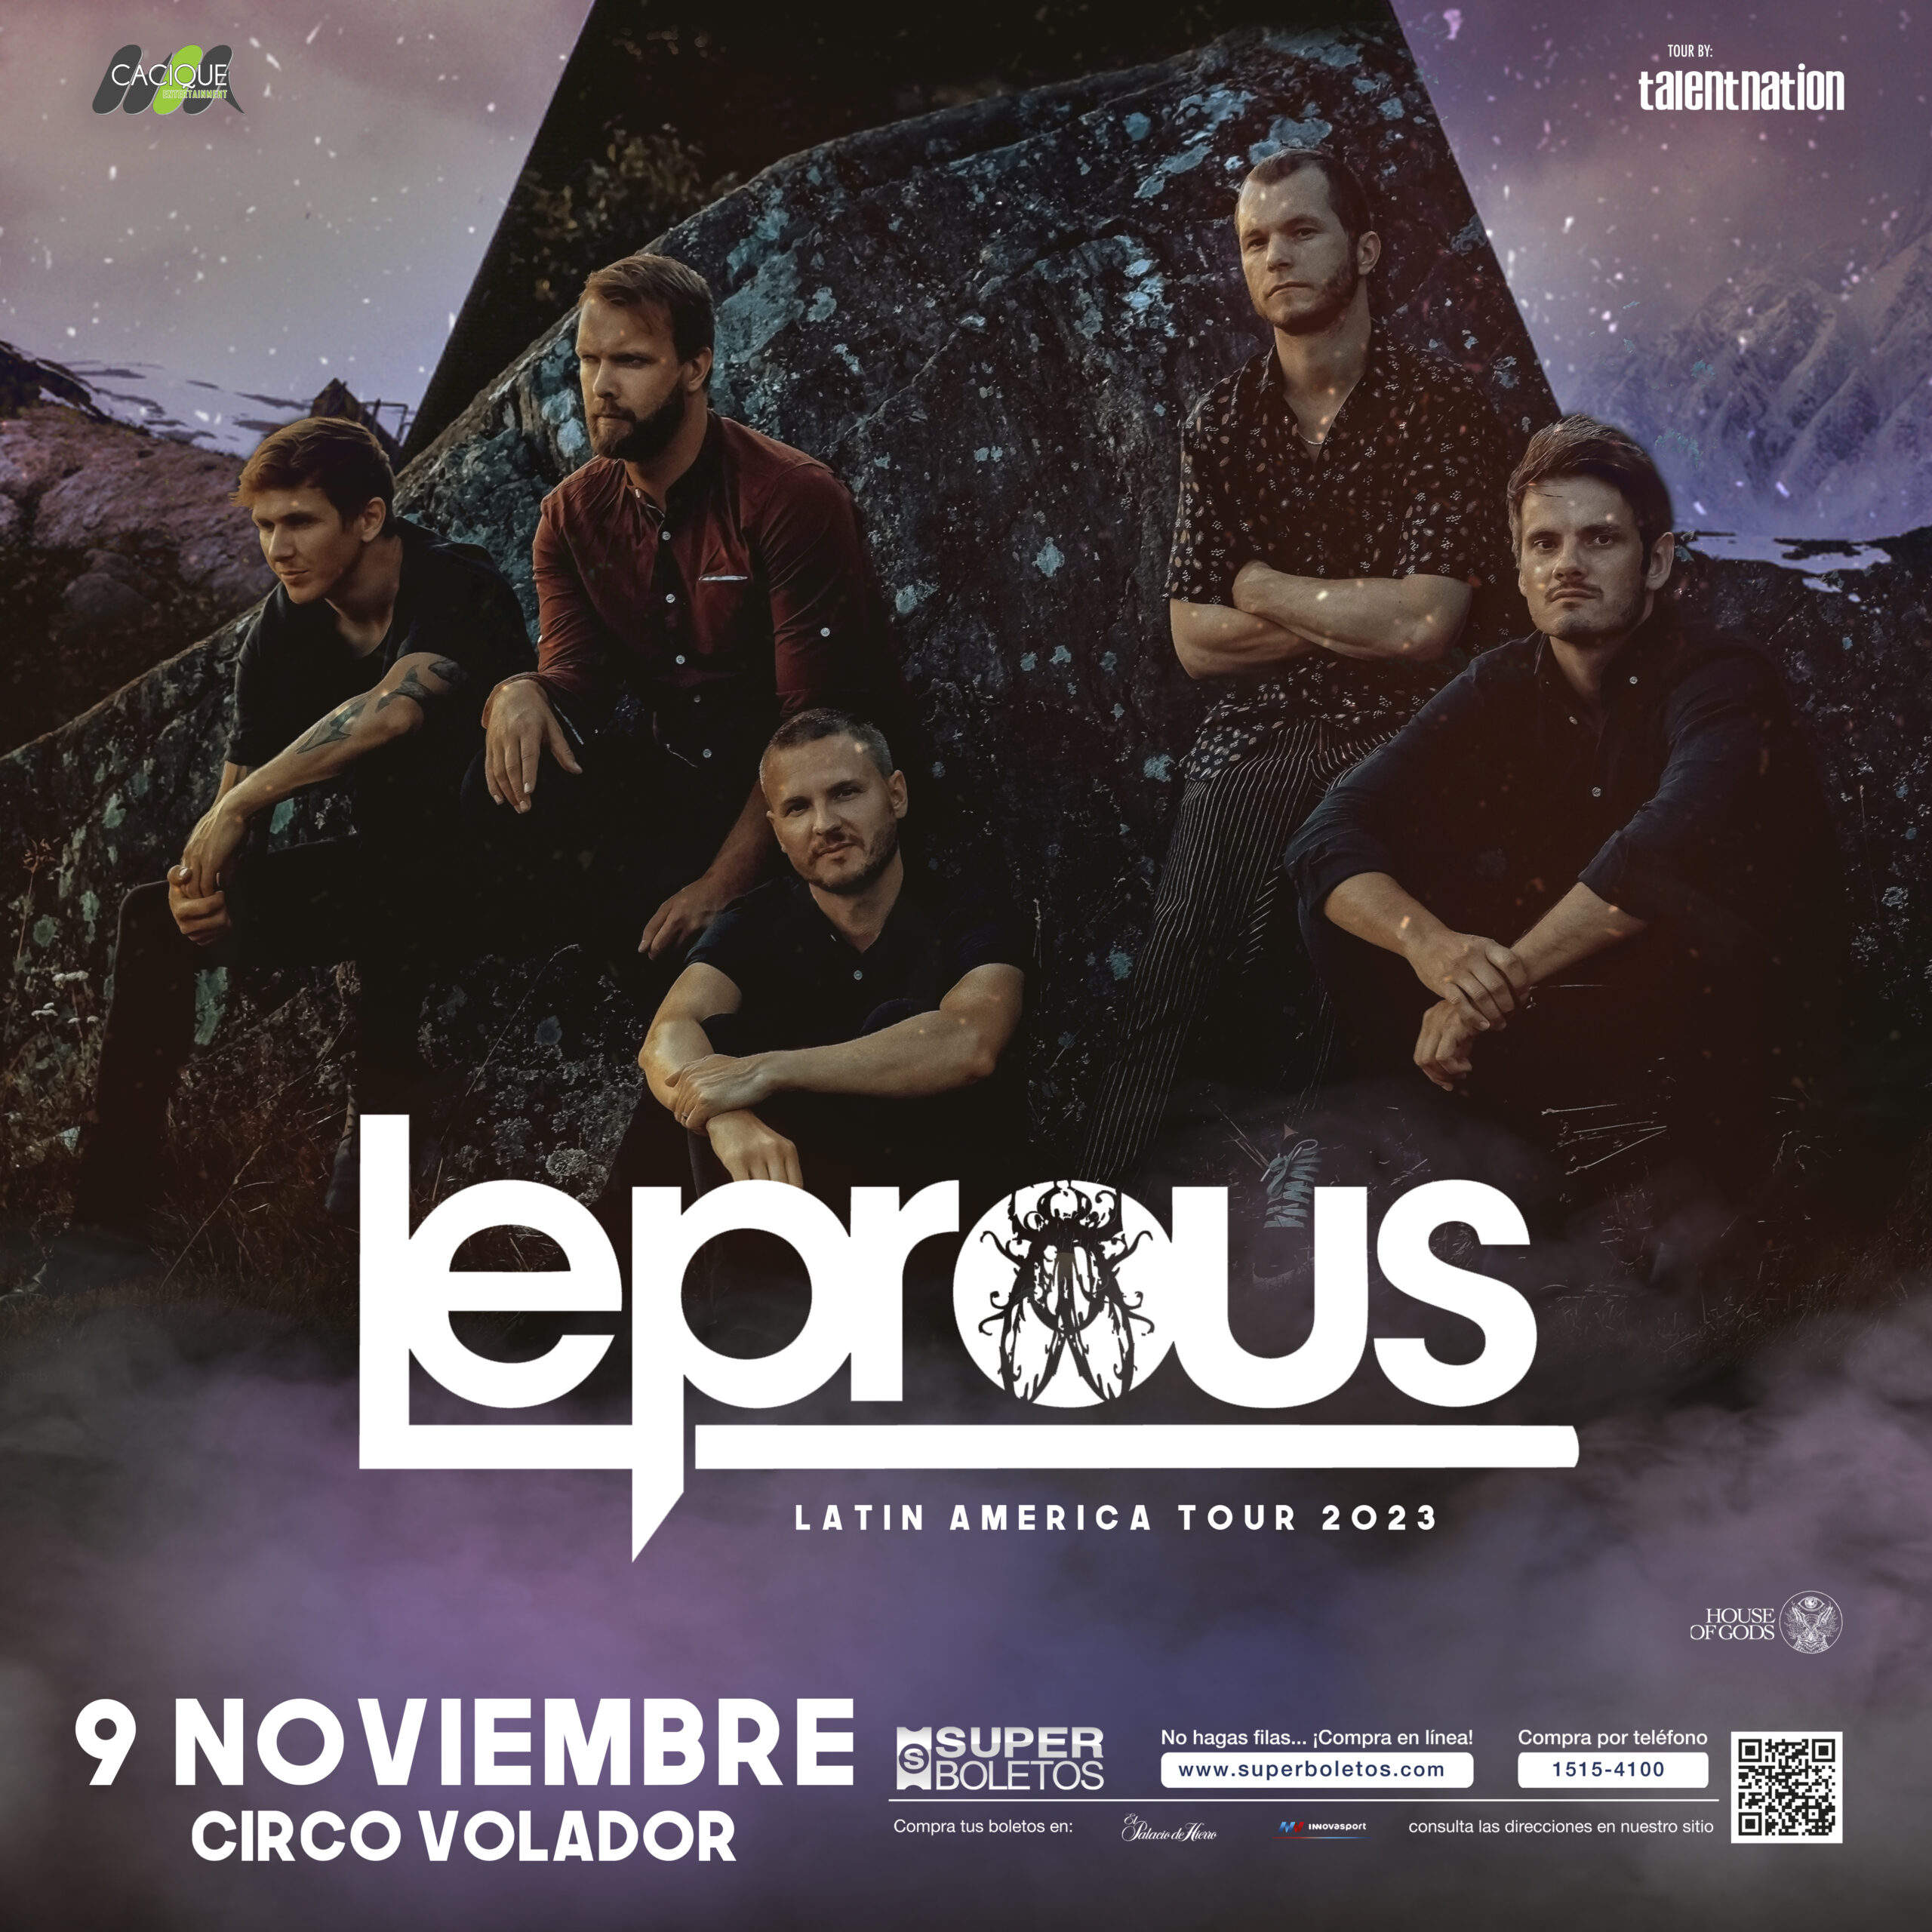 Es oficial: Leprous se presentará en Ciudad de México